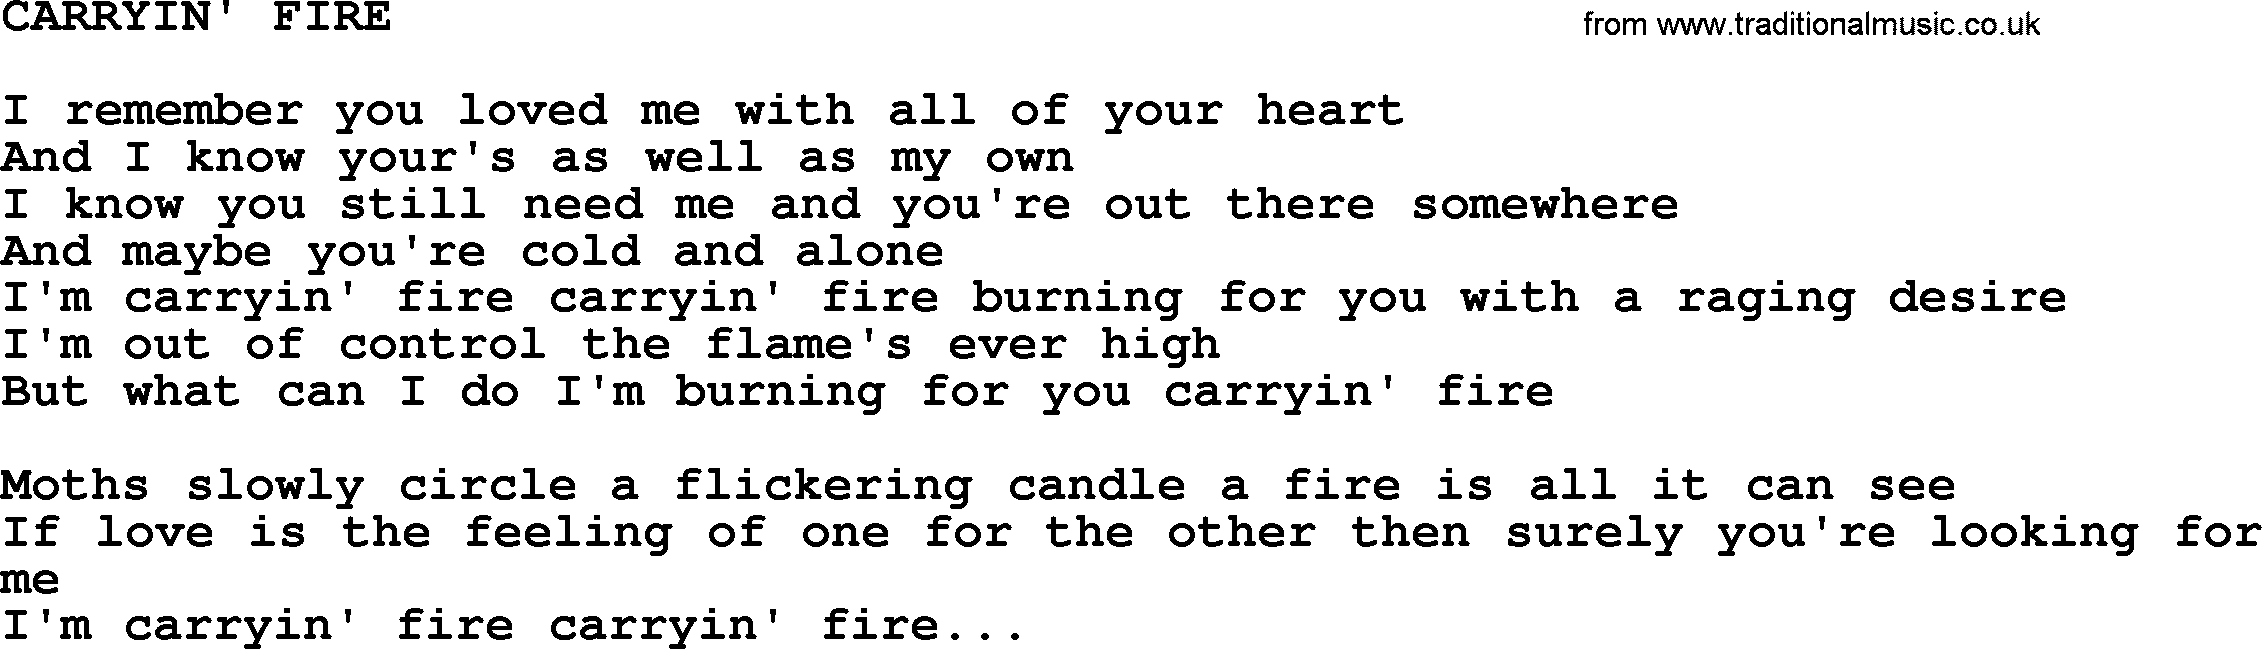 Merle Haggard song: Carryin' Fire, lyrics.